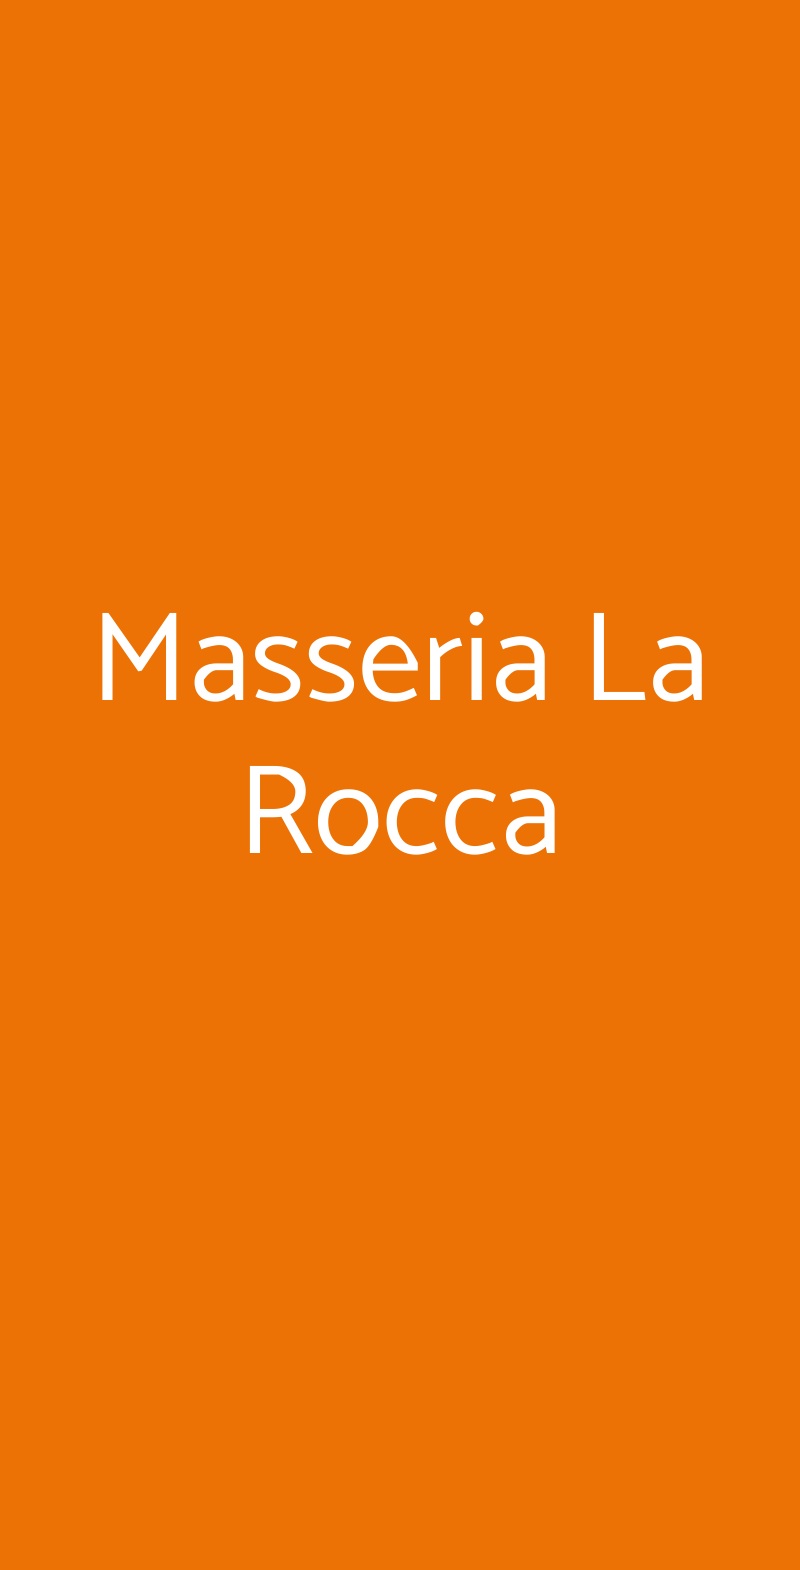 Masseria La Rocca Pacentro menù 1 pagina